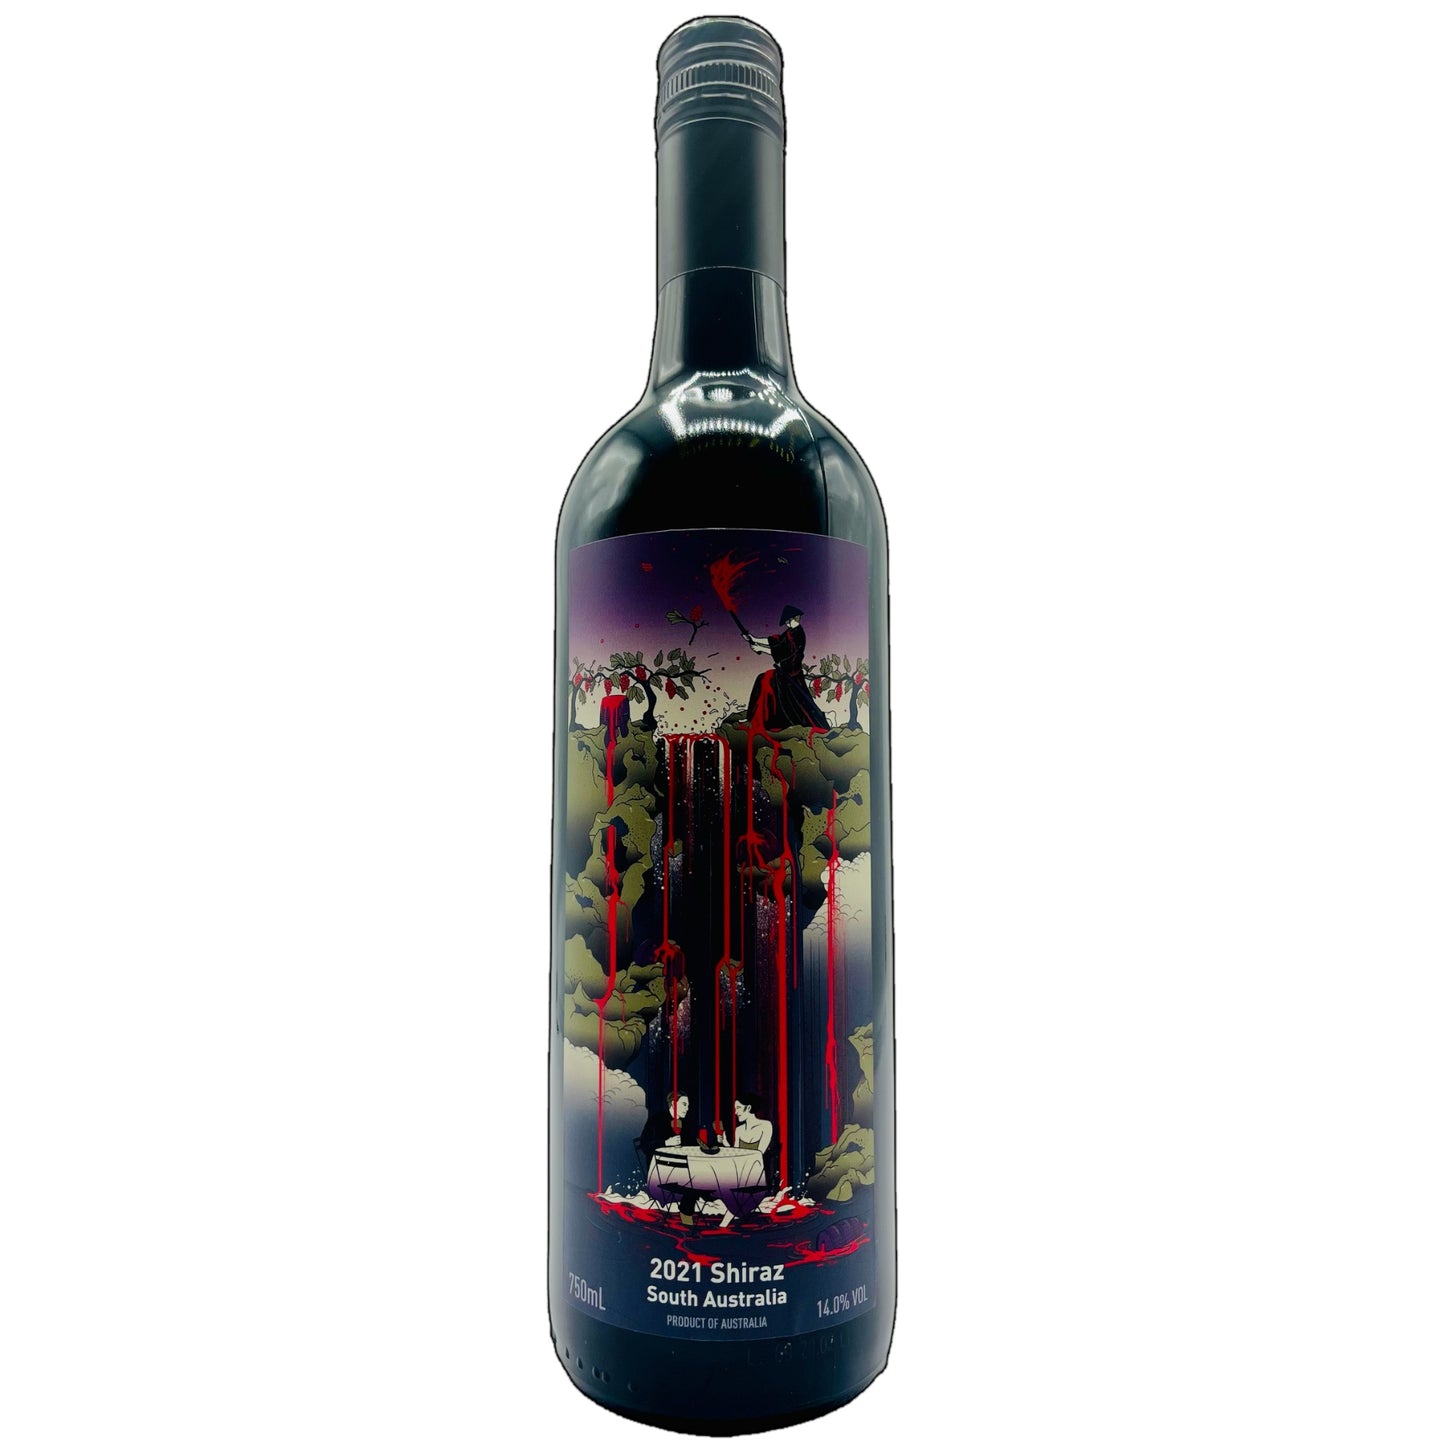 Free Run Juice, Samurai Shiraz 2021 - Painted Wines